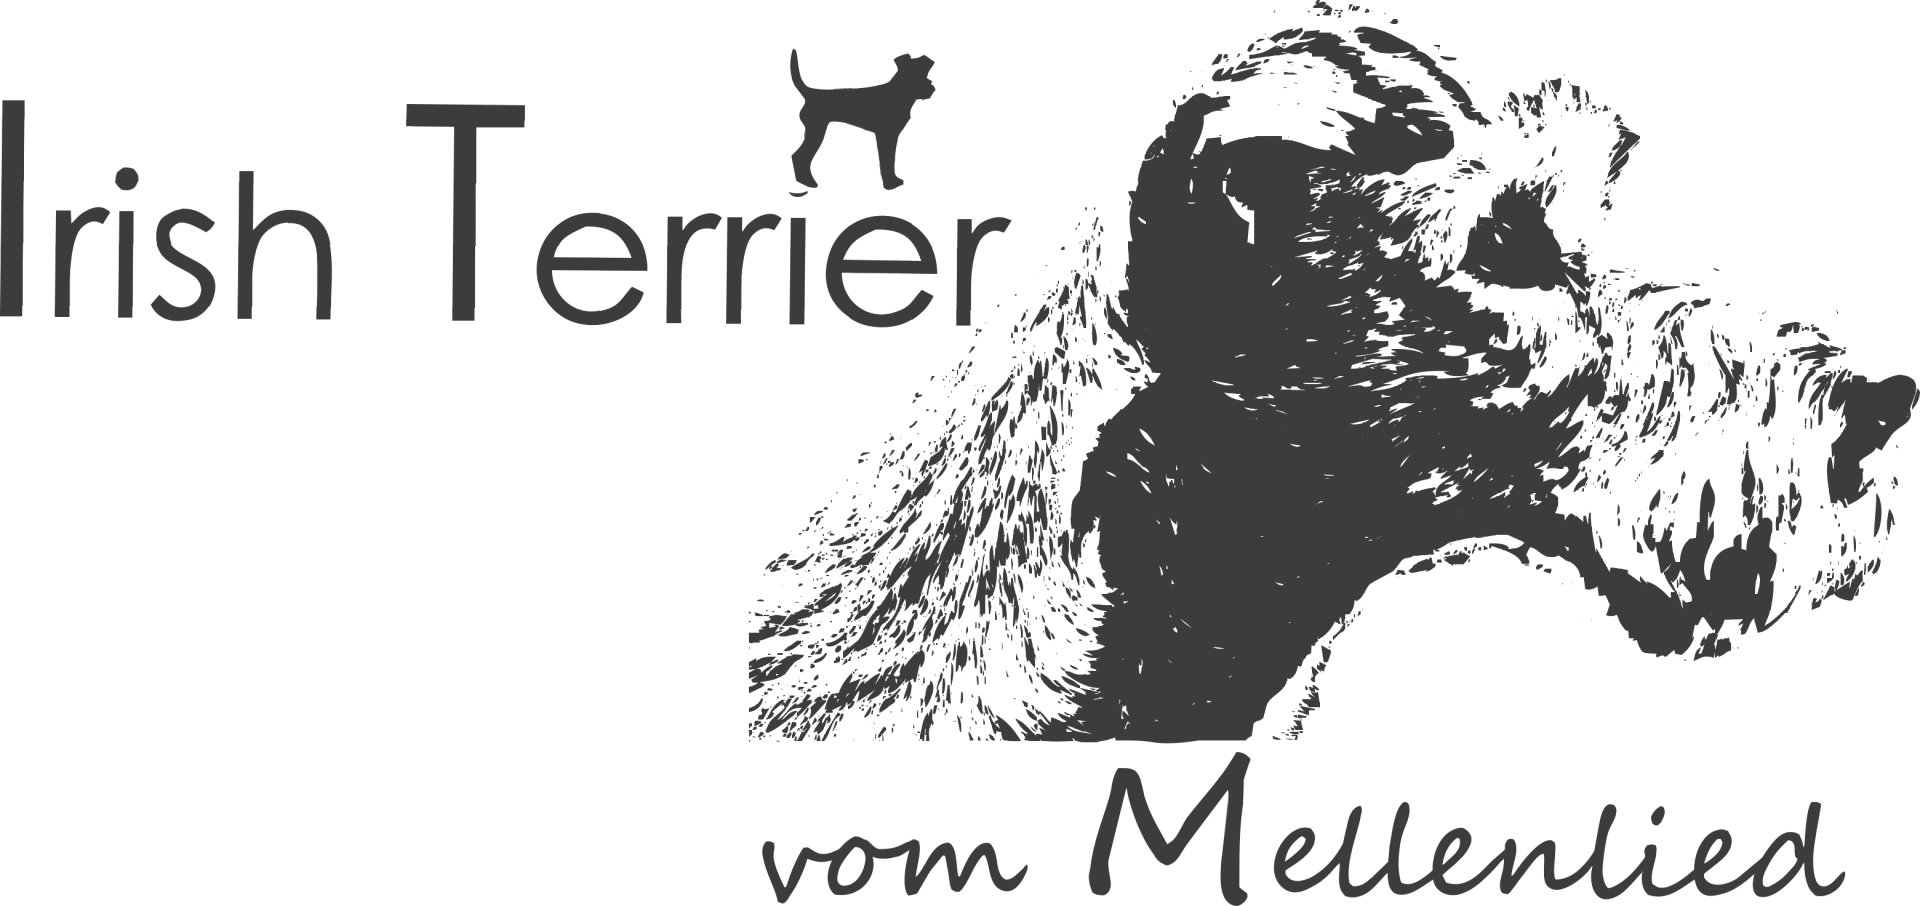 Irish Terrier vom Mellenlied